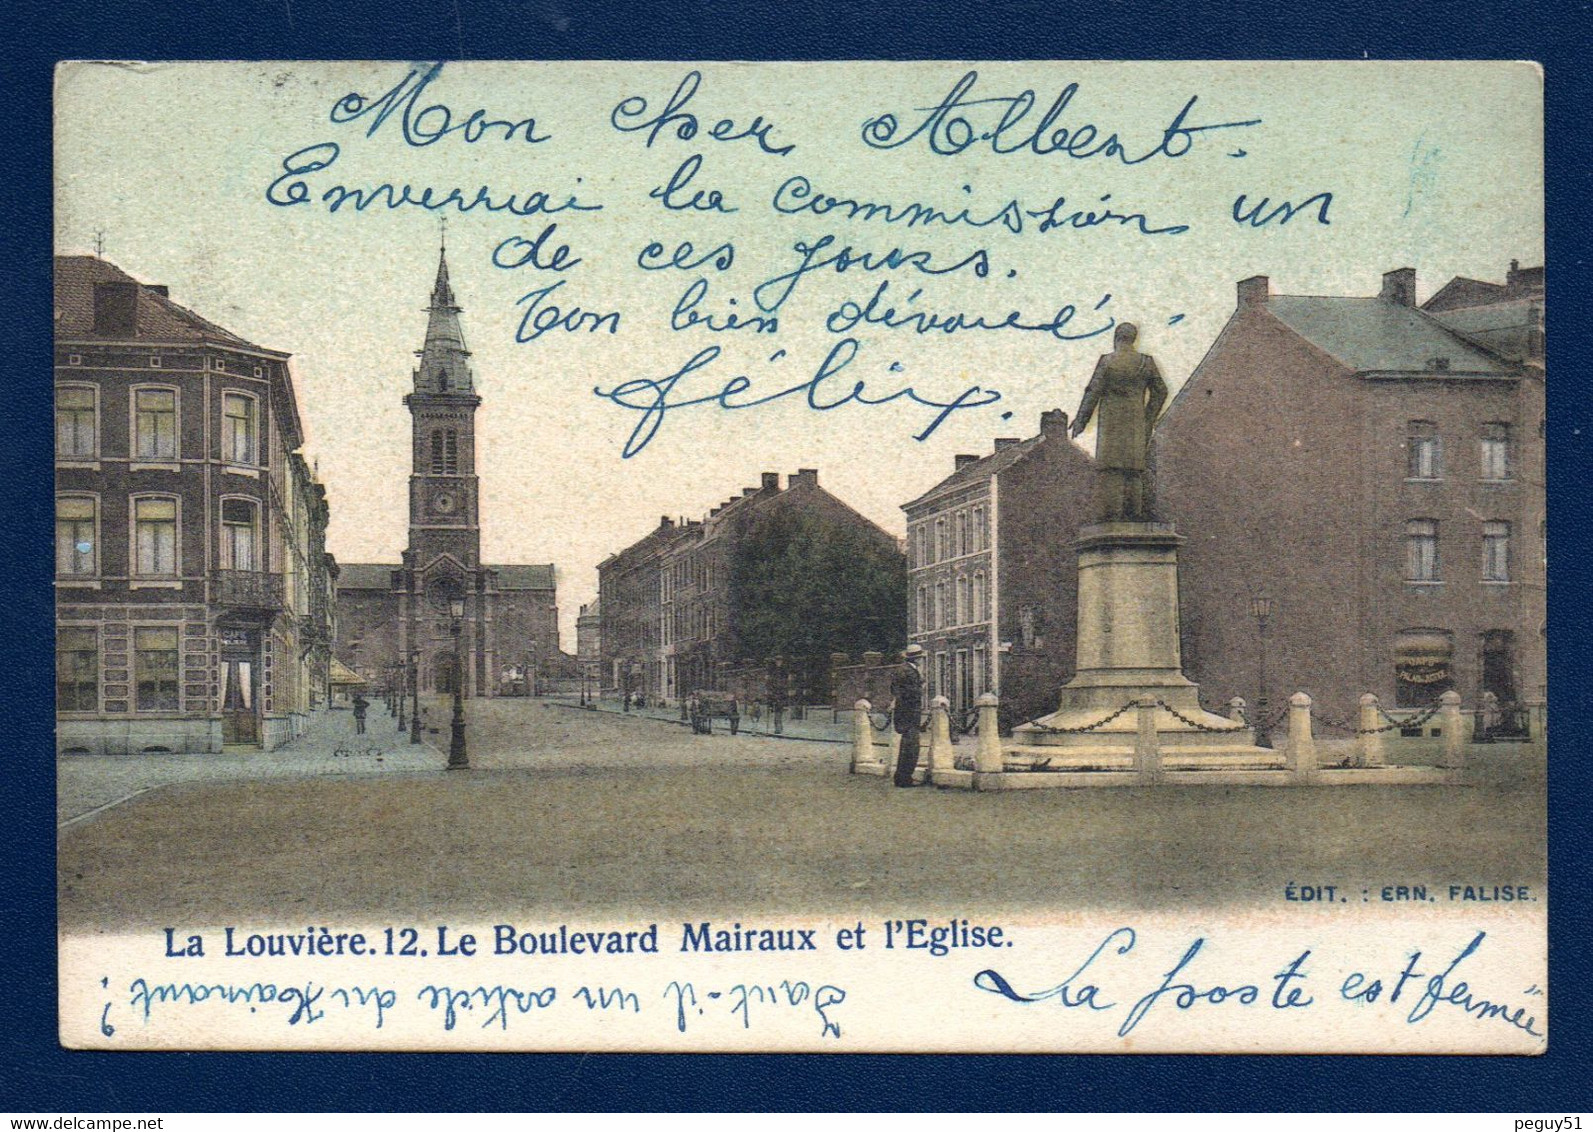 La Louvière. Boulevard Mairaux. Eglise St. Joseph. Café Molière. Statue Amand Mairaux ( V. Rousseau 1890). 1906 - La Louviere